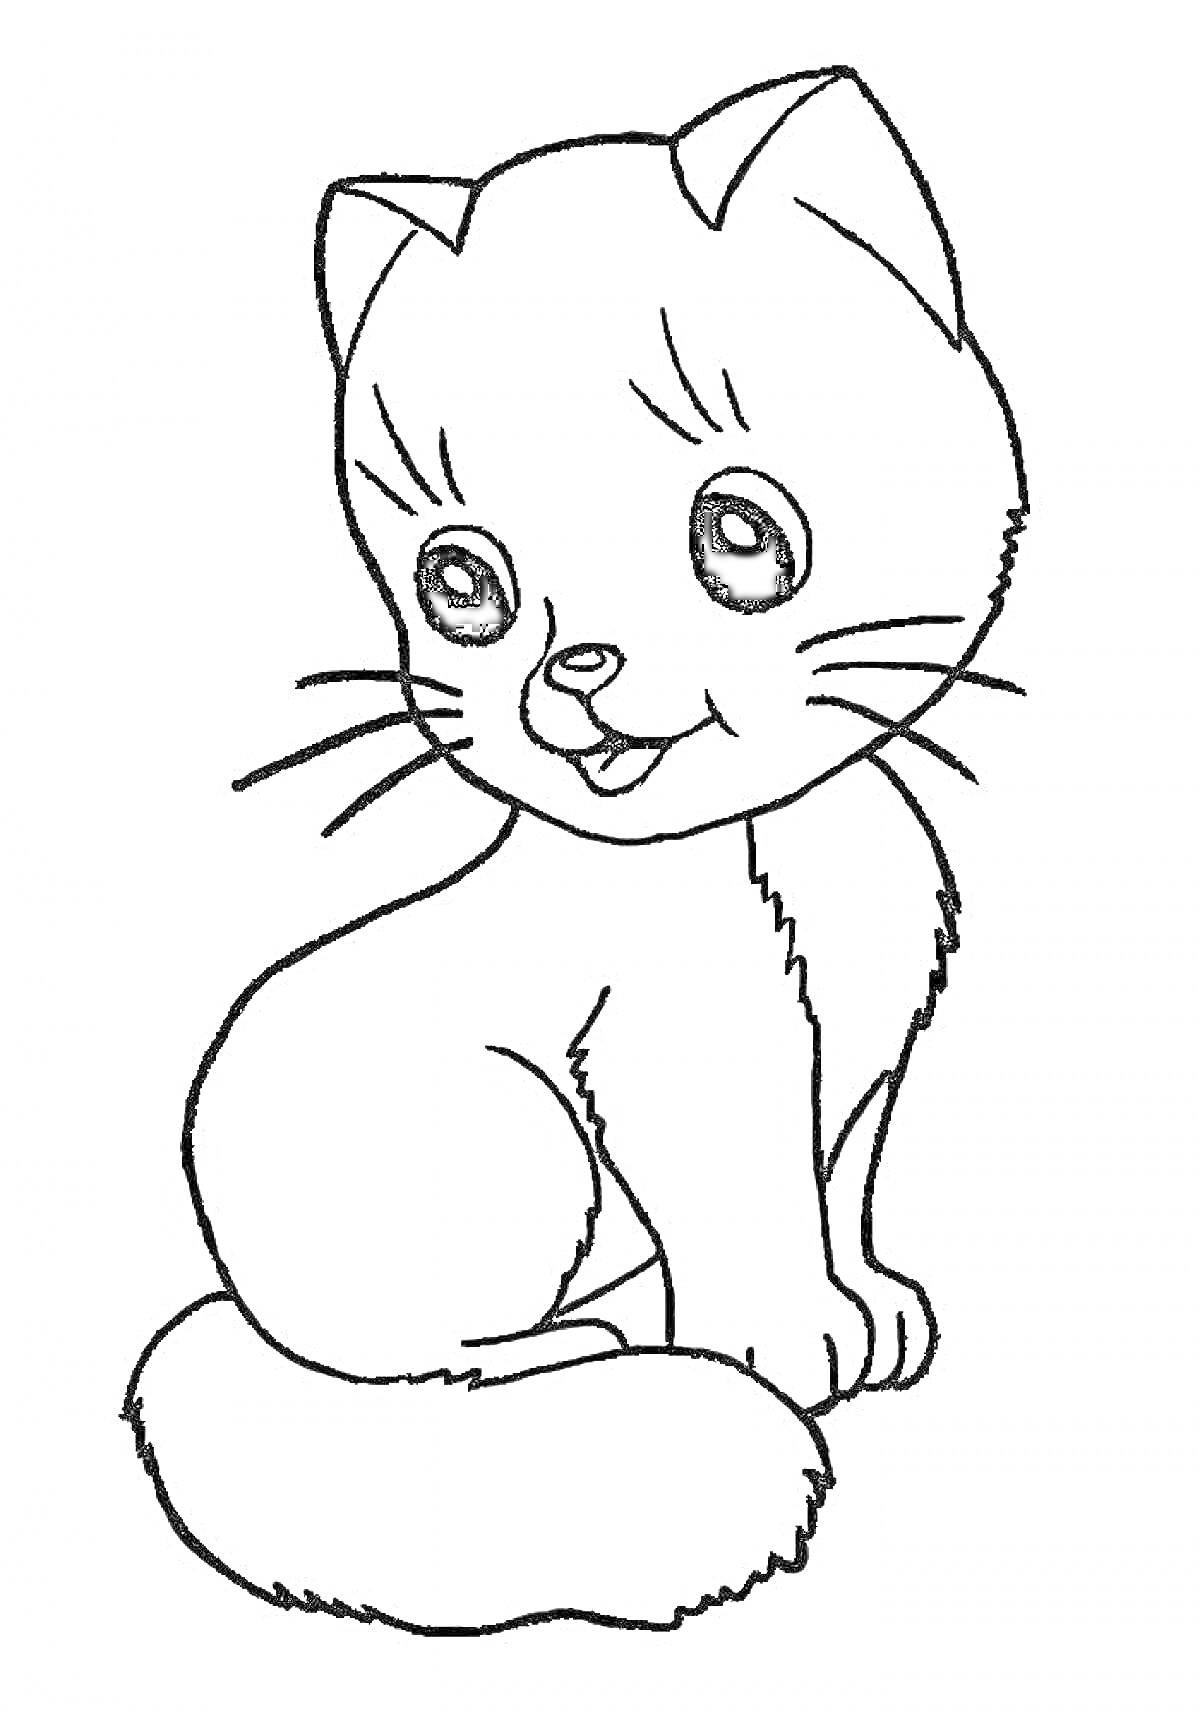 Раскраска Котик с большими глазами и пушистым хвостом, сидящий и смотрящий вперёд